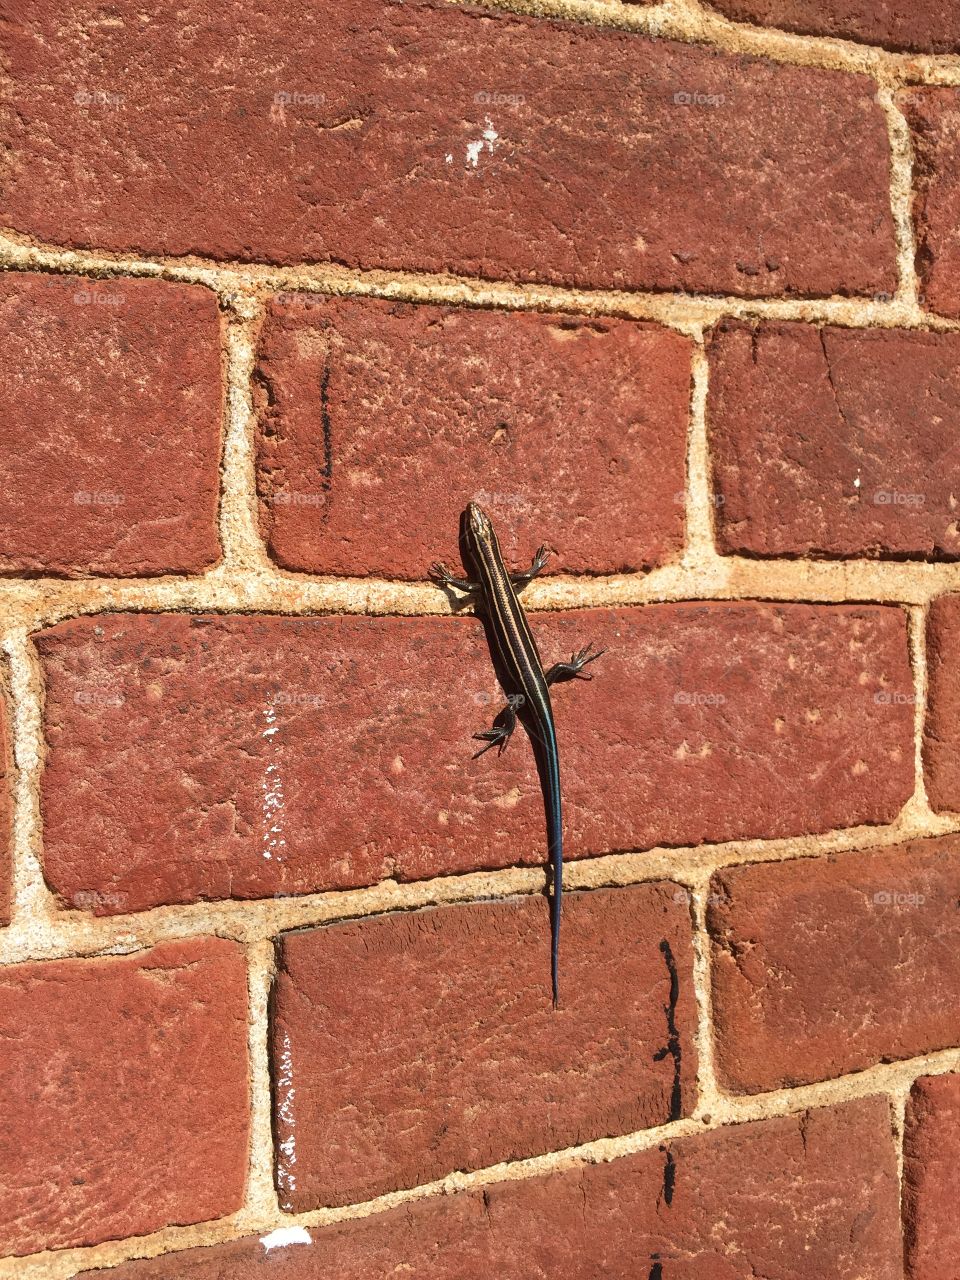 Skink or lizard in a brick wall  